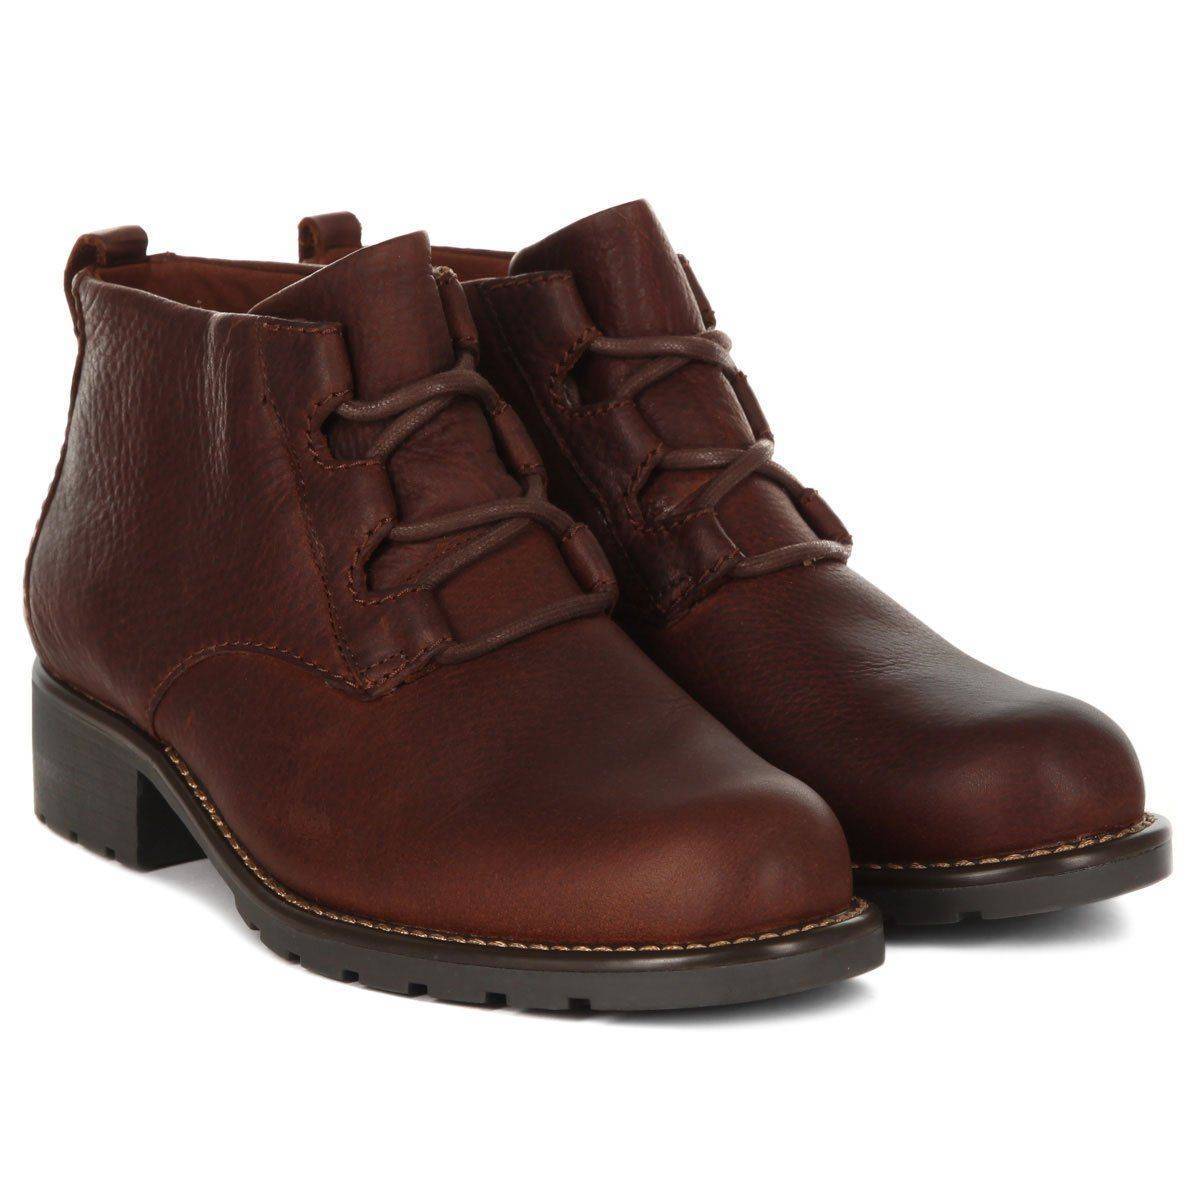 Купить ботинки Clarks, цвет коричневый, Модель: Orinoco Oaks, арт: 26135214 - нет в наличии